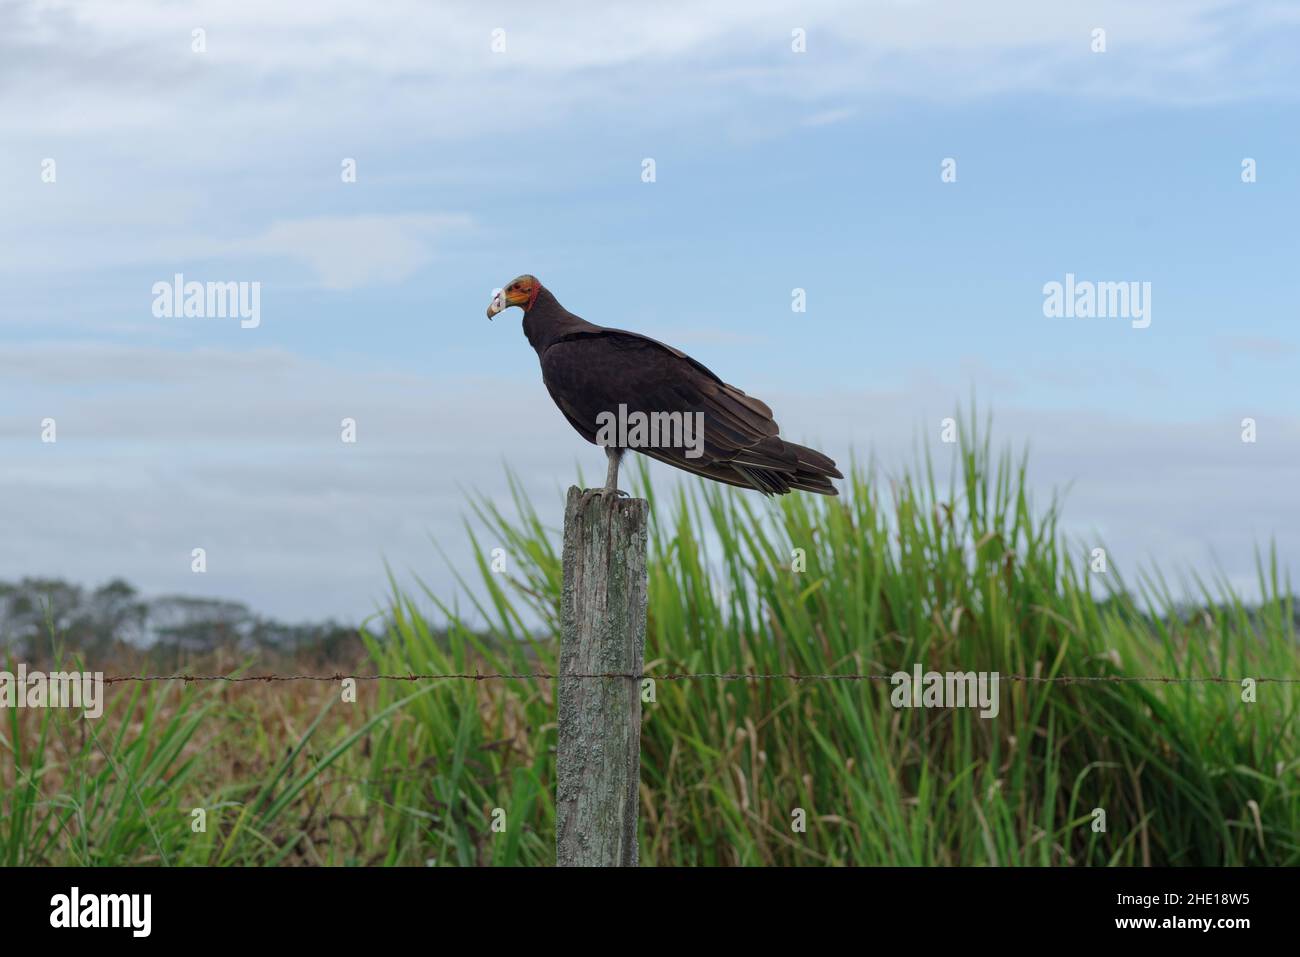 Immagine di un minore avvoltoio dalla testa gialla preso a Panama. Foto Stock